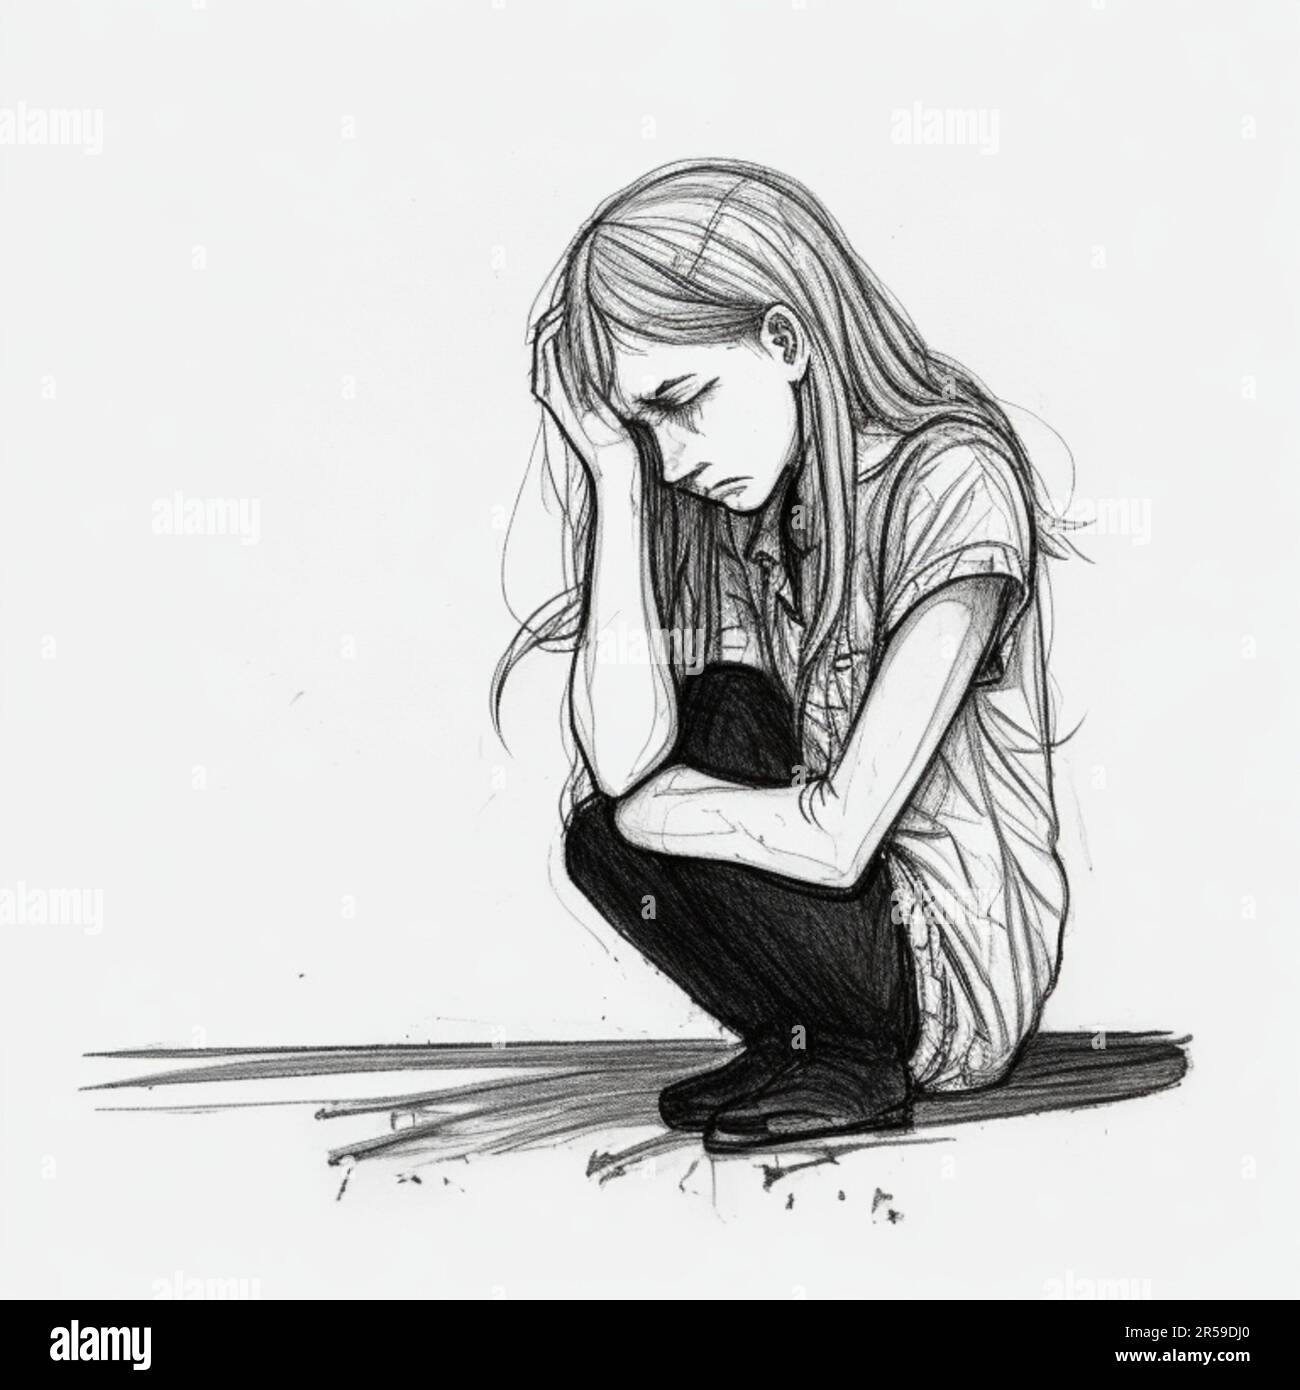 Dessin de dessins animés avec art de ligne de la jeune femme seule a un problème de santé mentale, souffrant de l'émotion solitude, la dépression Banque D'Images